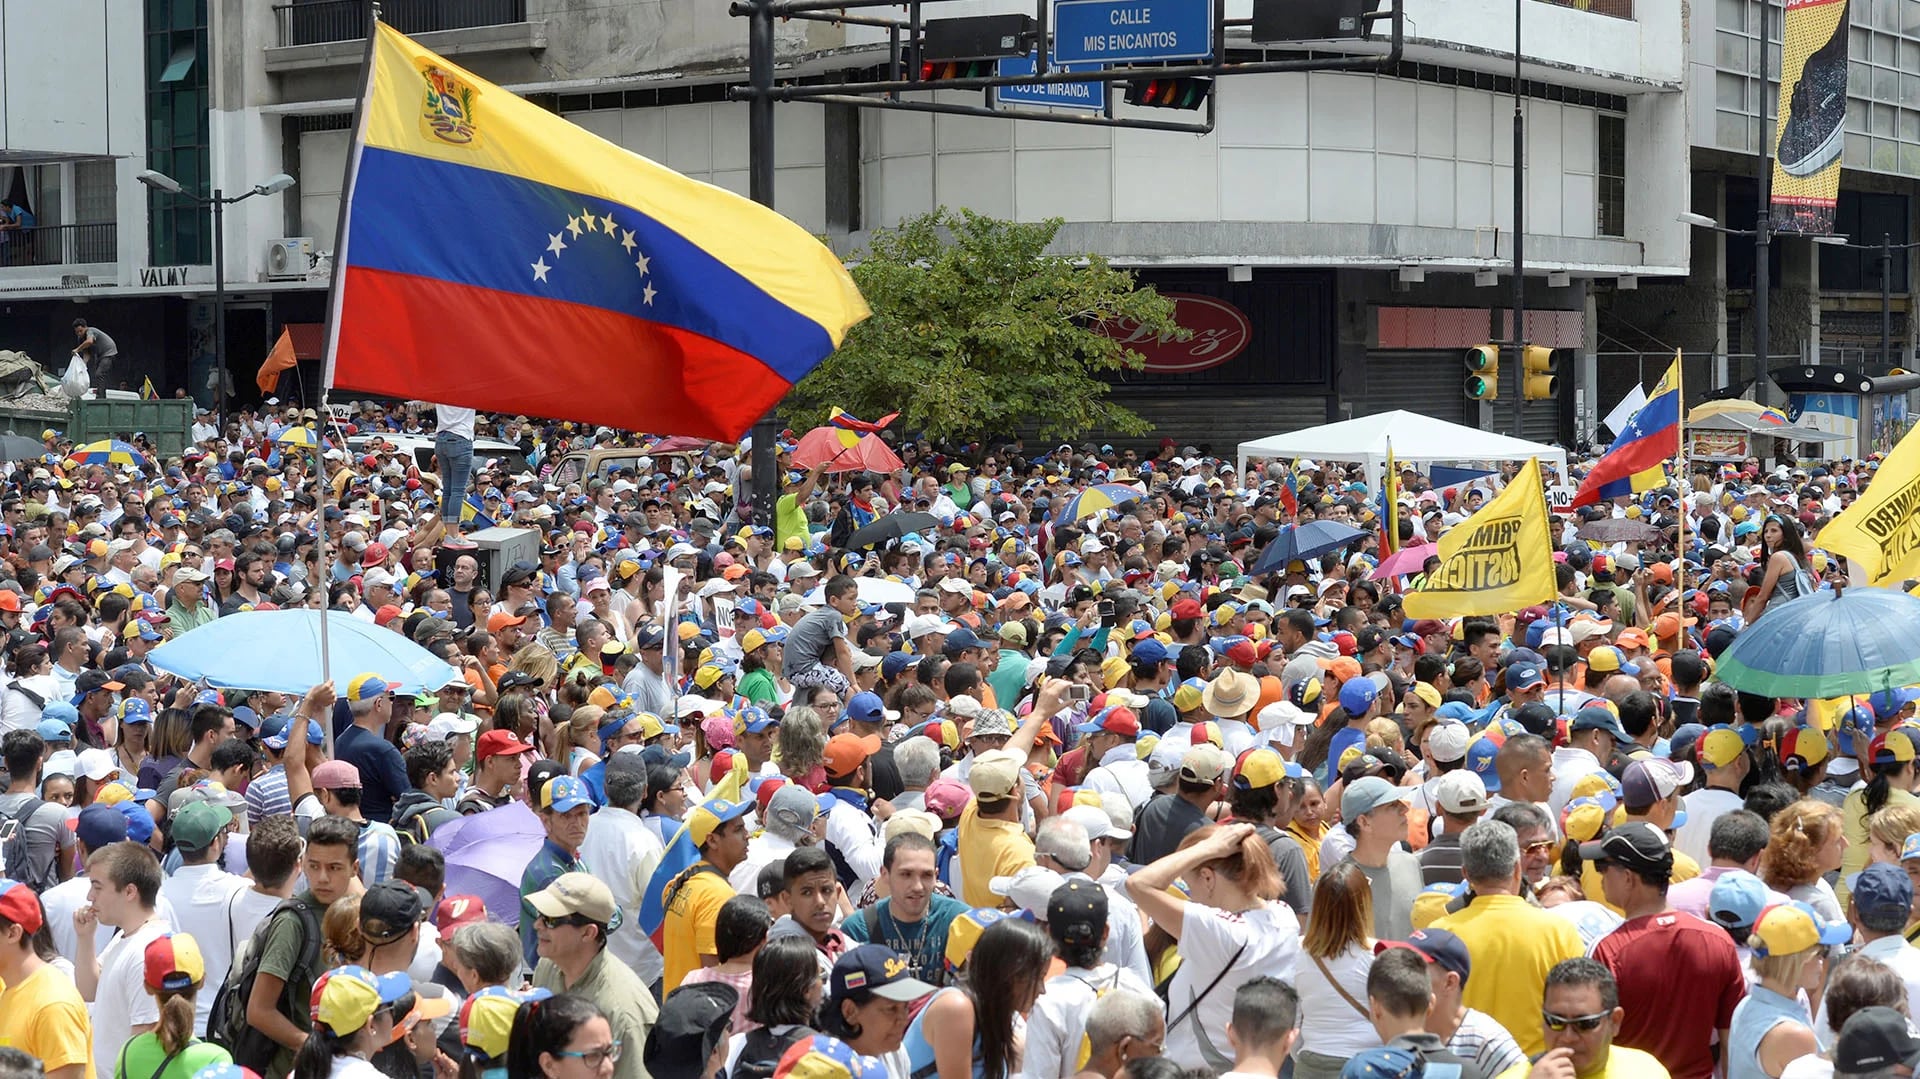 Los venezolanos protestan contra el régimen chavista (AFP)